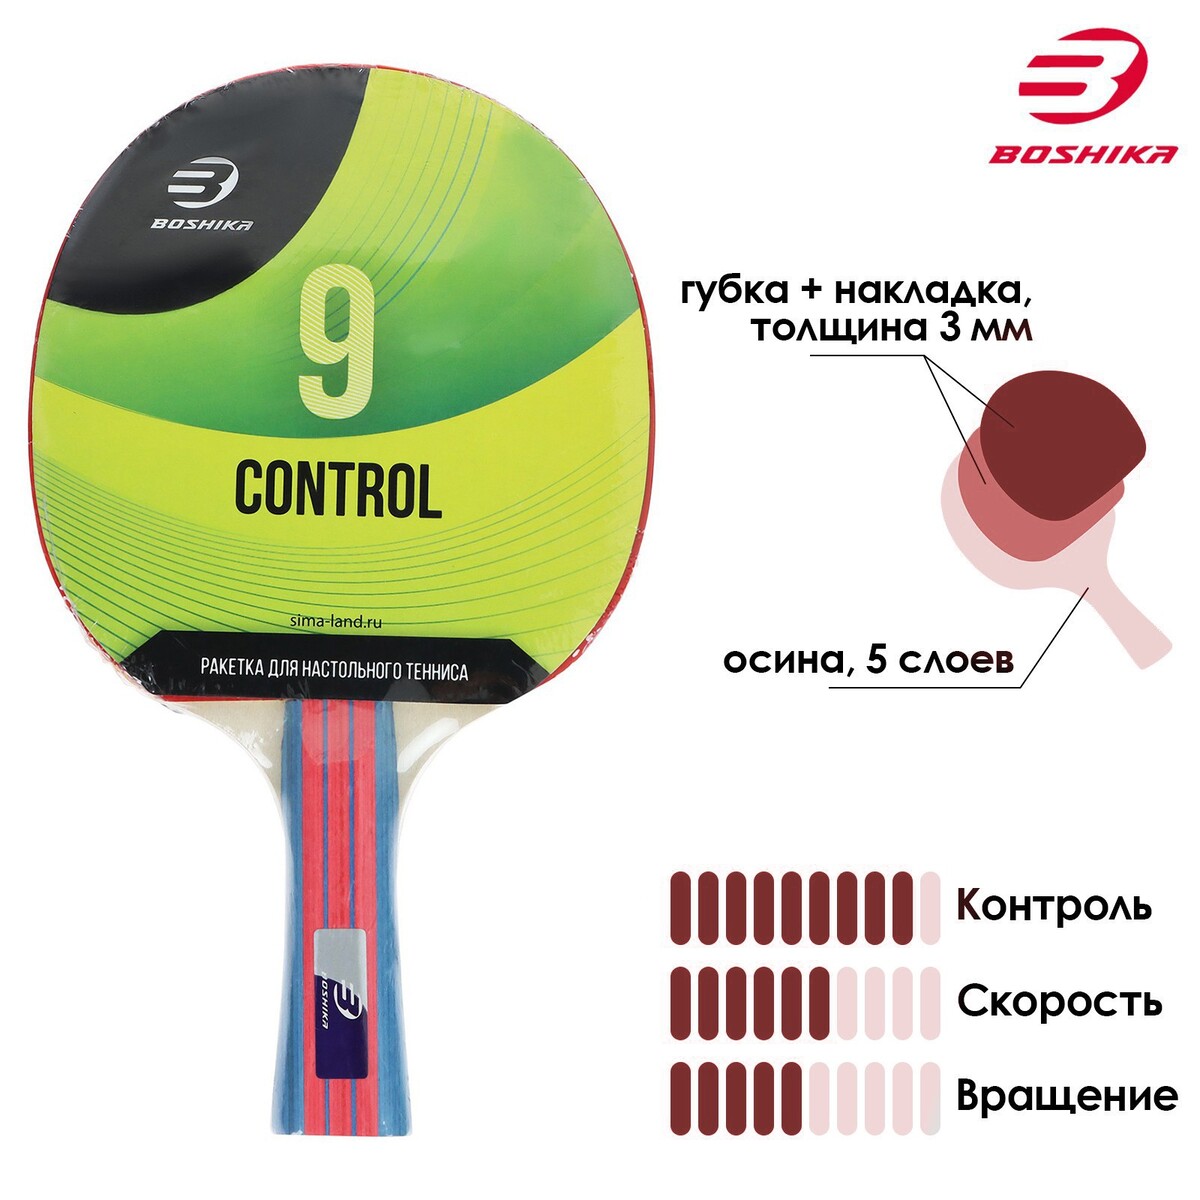 Ракетка для настольного тенниса boshika control 9, для начинающих, губка 1,8 мм, коническая ручка дрессировка для начинающих